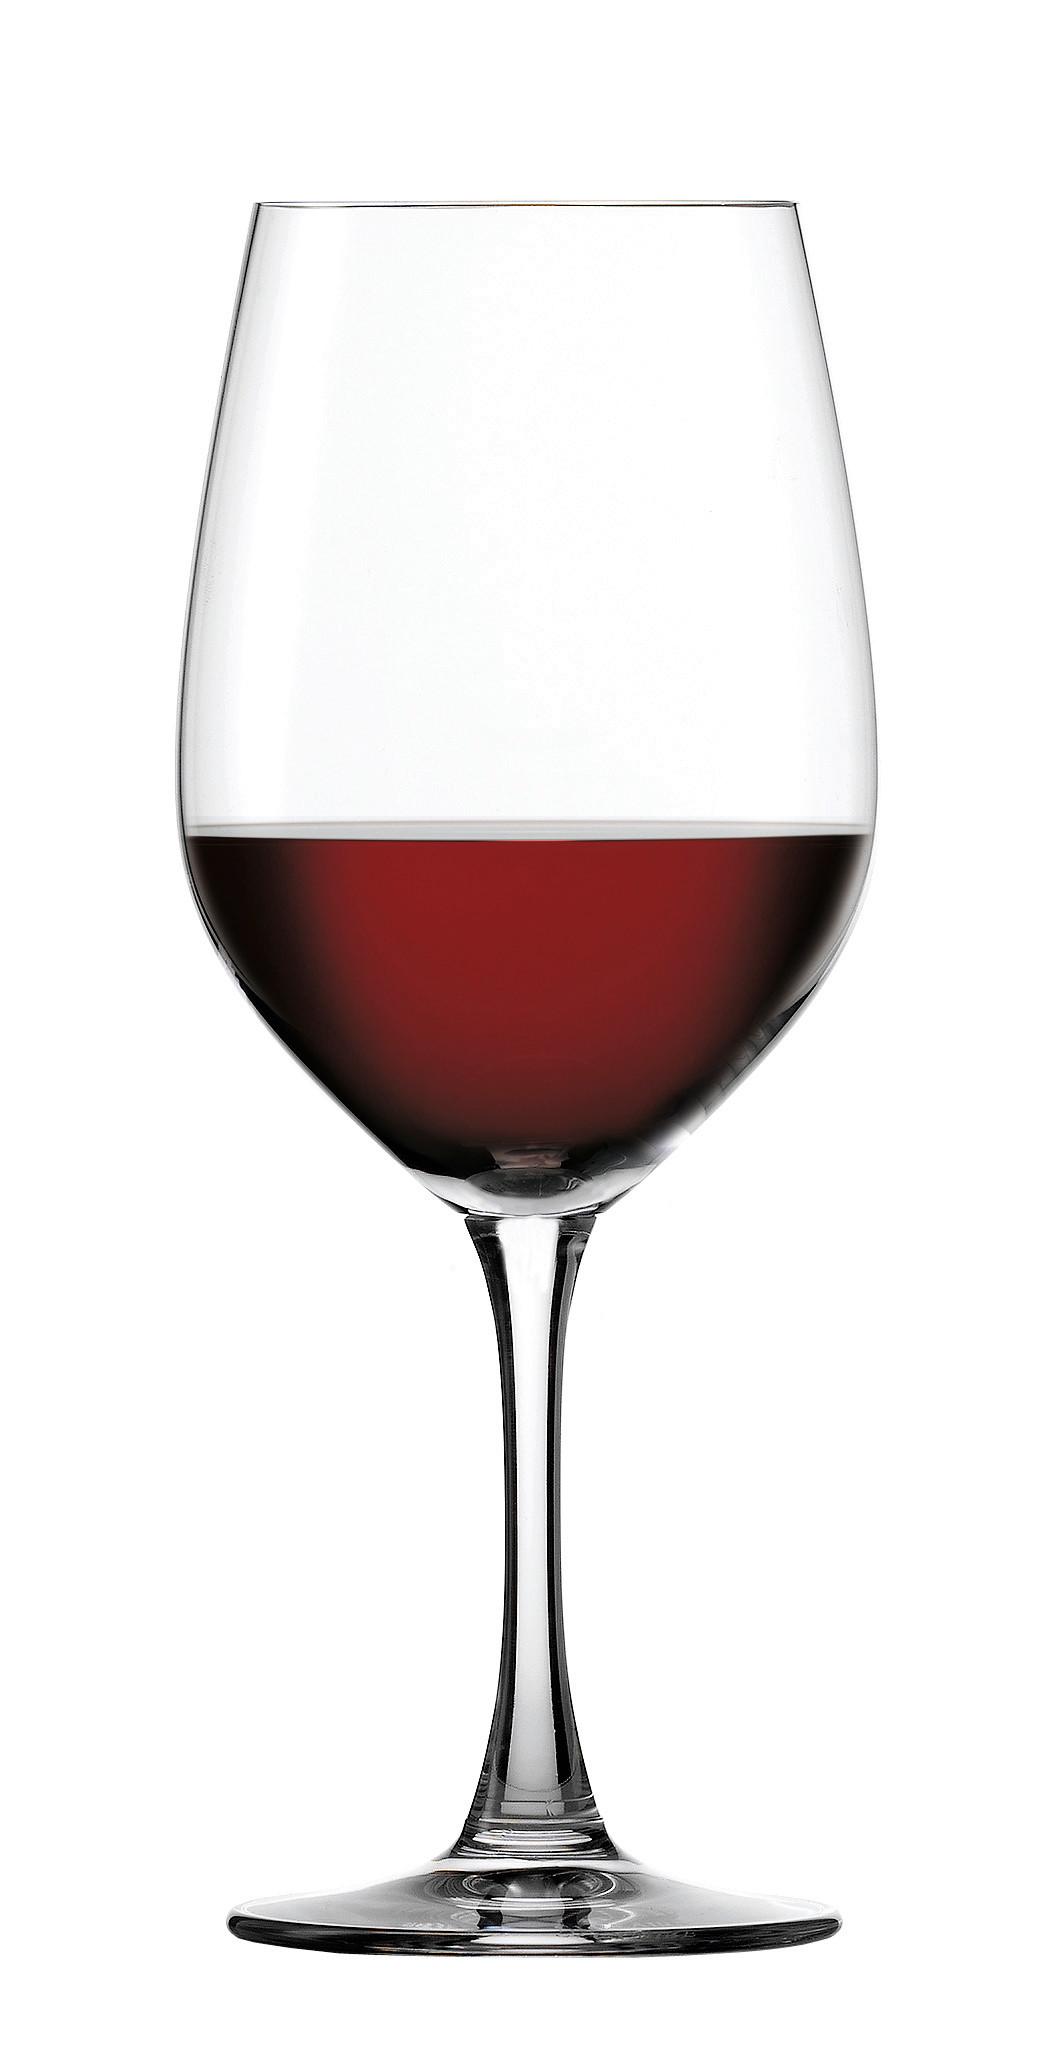 Gläserset Winelovers, 4-teilig - Klar, MODERN, Glas (9,2/22,6/9,2cm) - Spiegelau